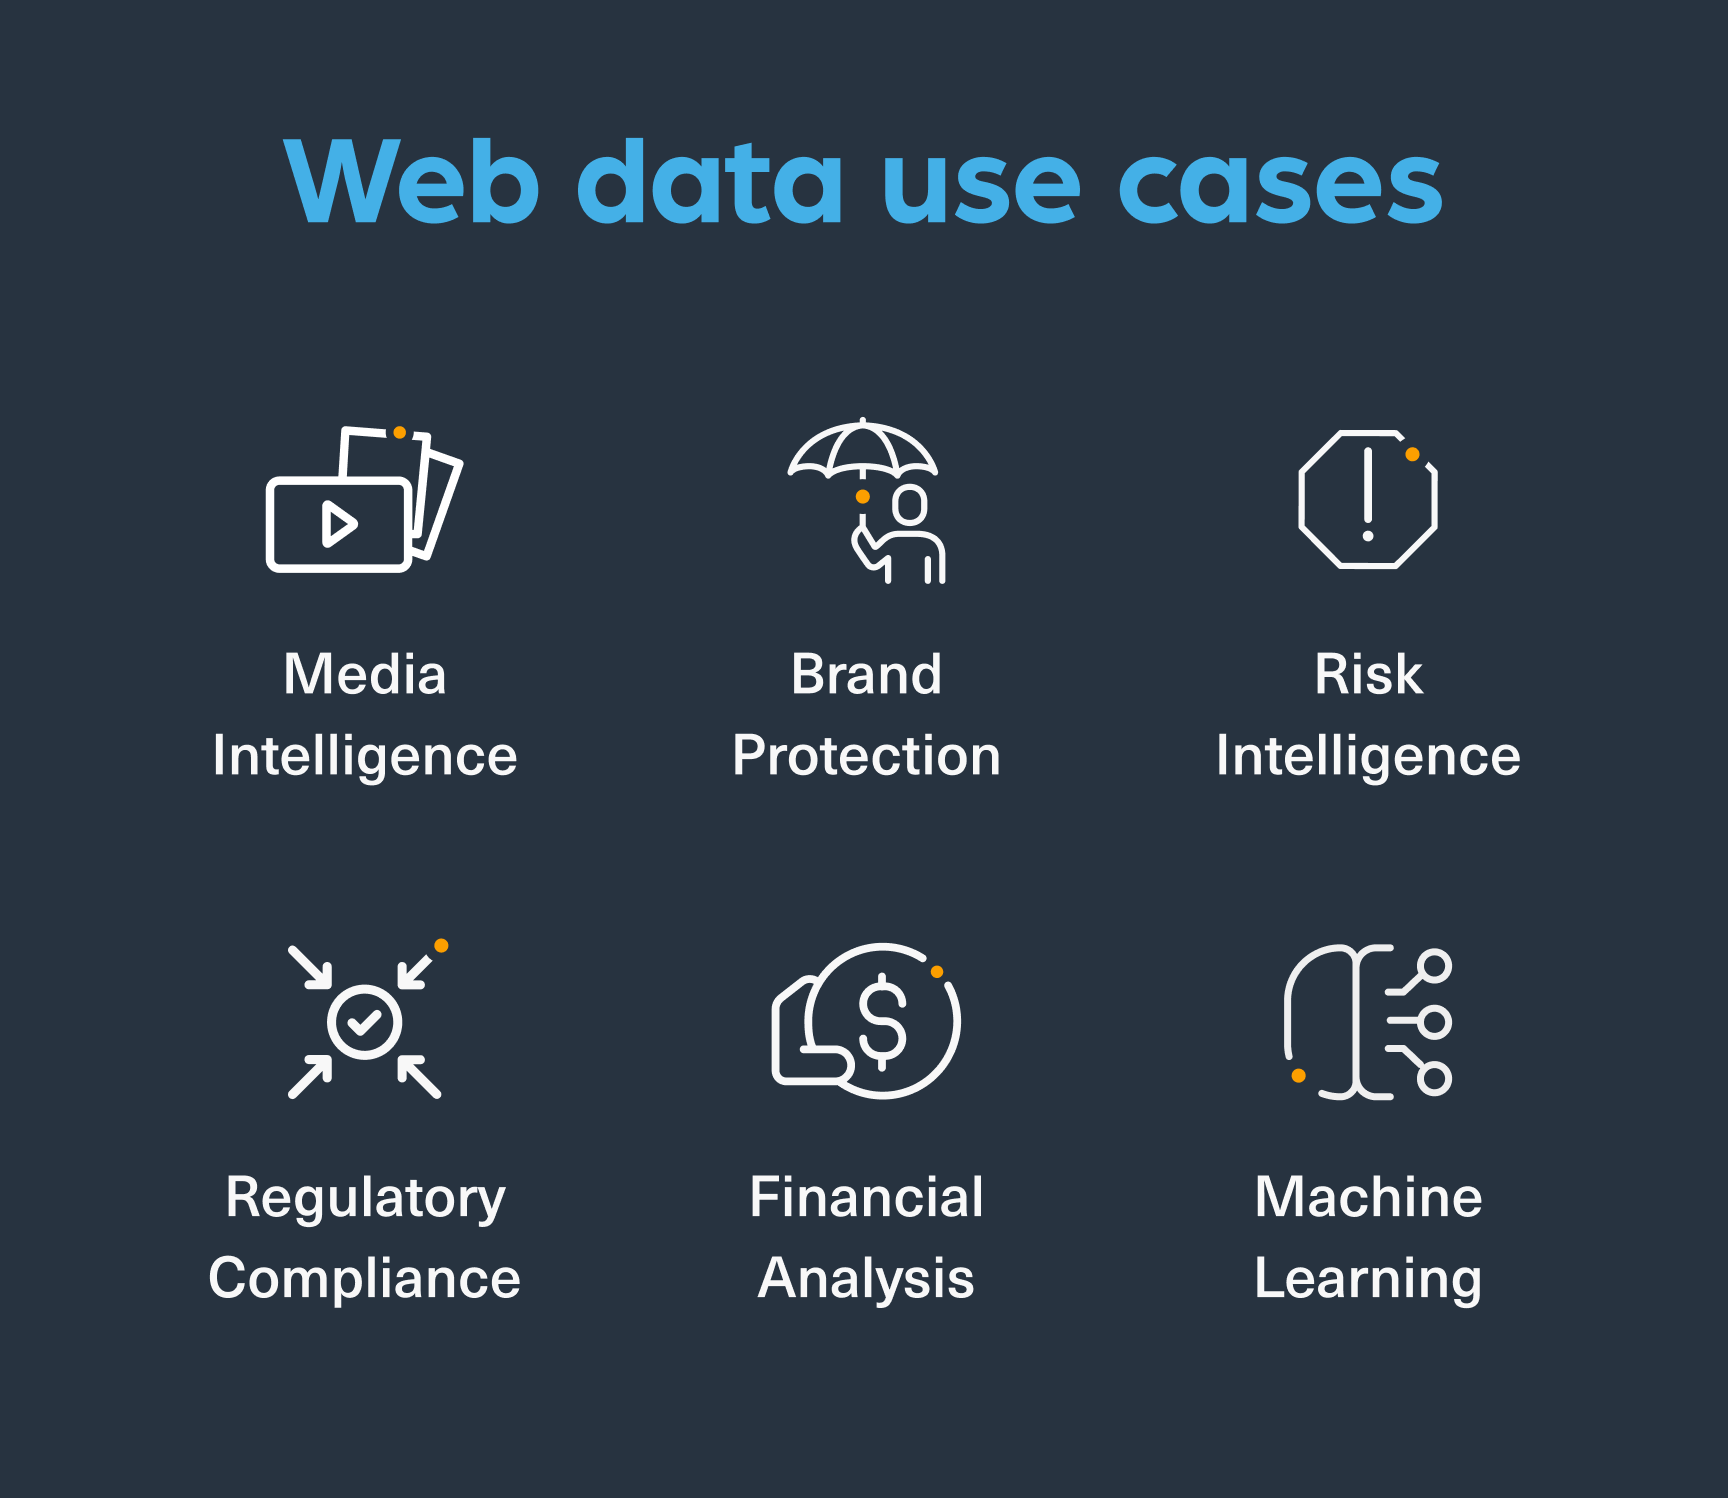 Key web data use cases